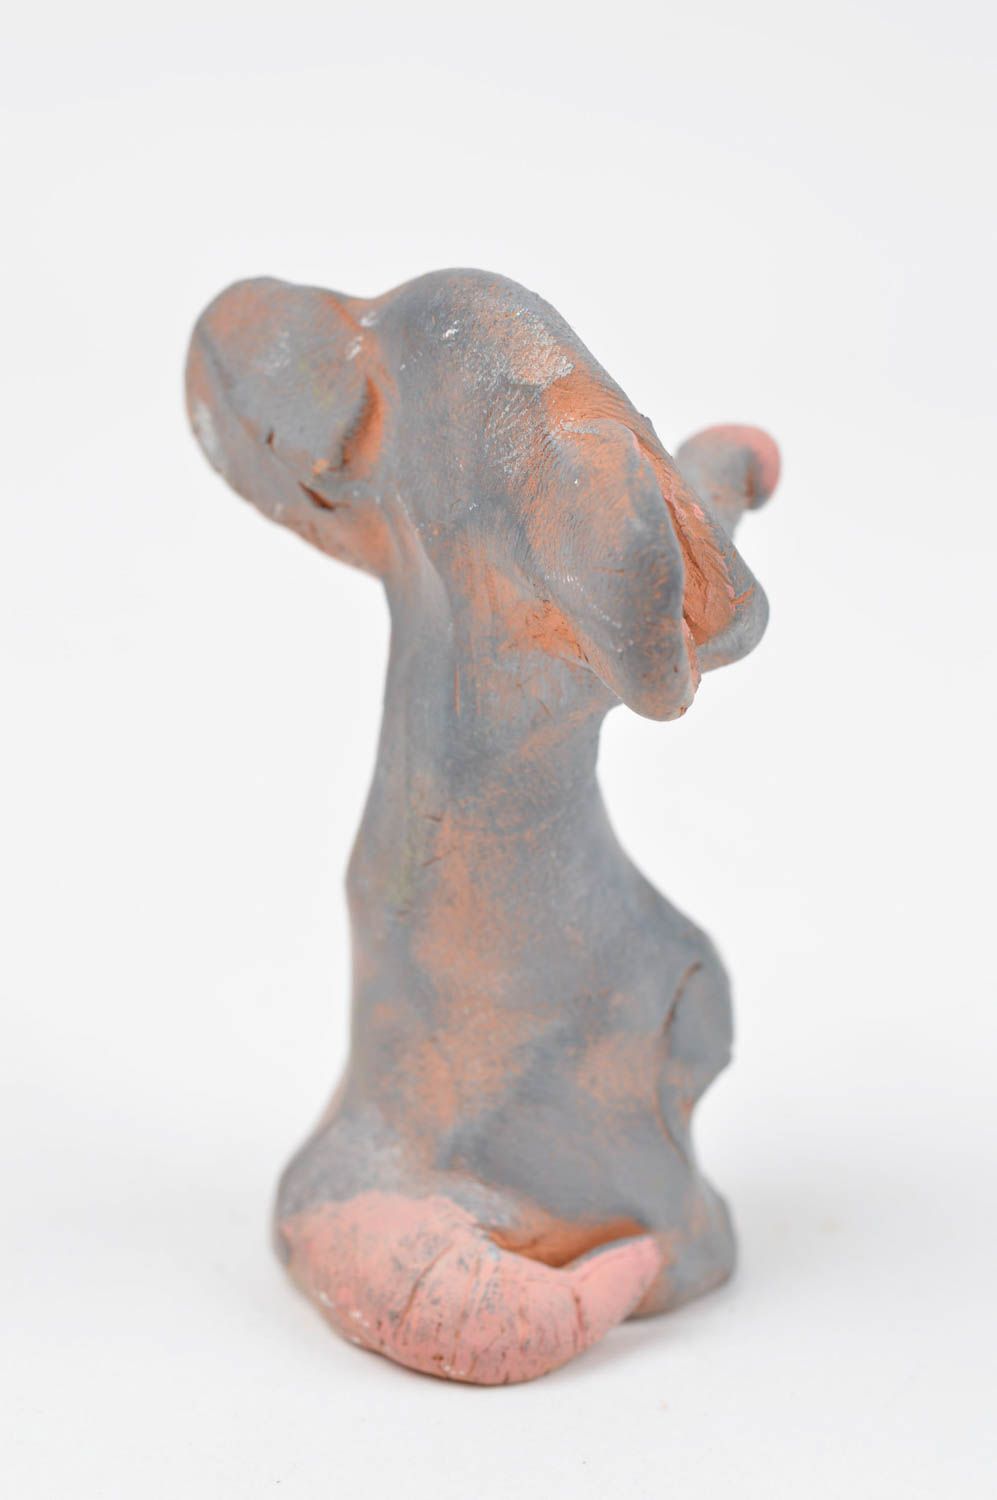 Статуэтка животного мышки ручной работы статуэтка для декора фигурка из глины фото 5